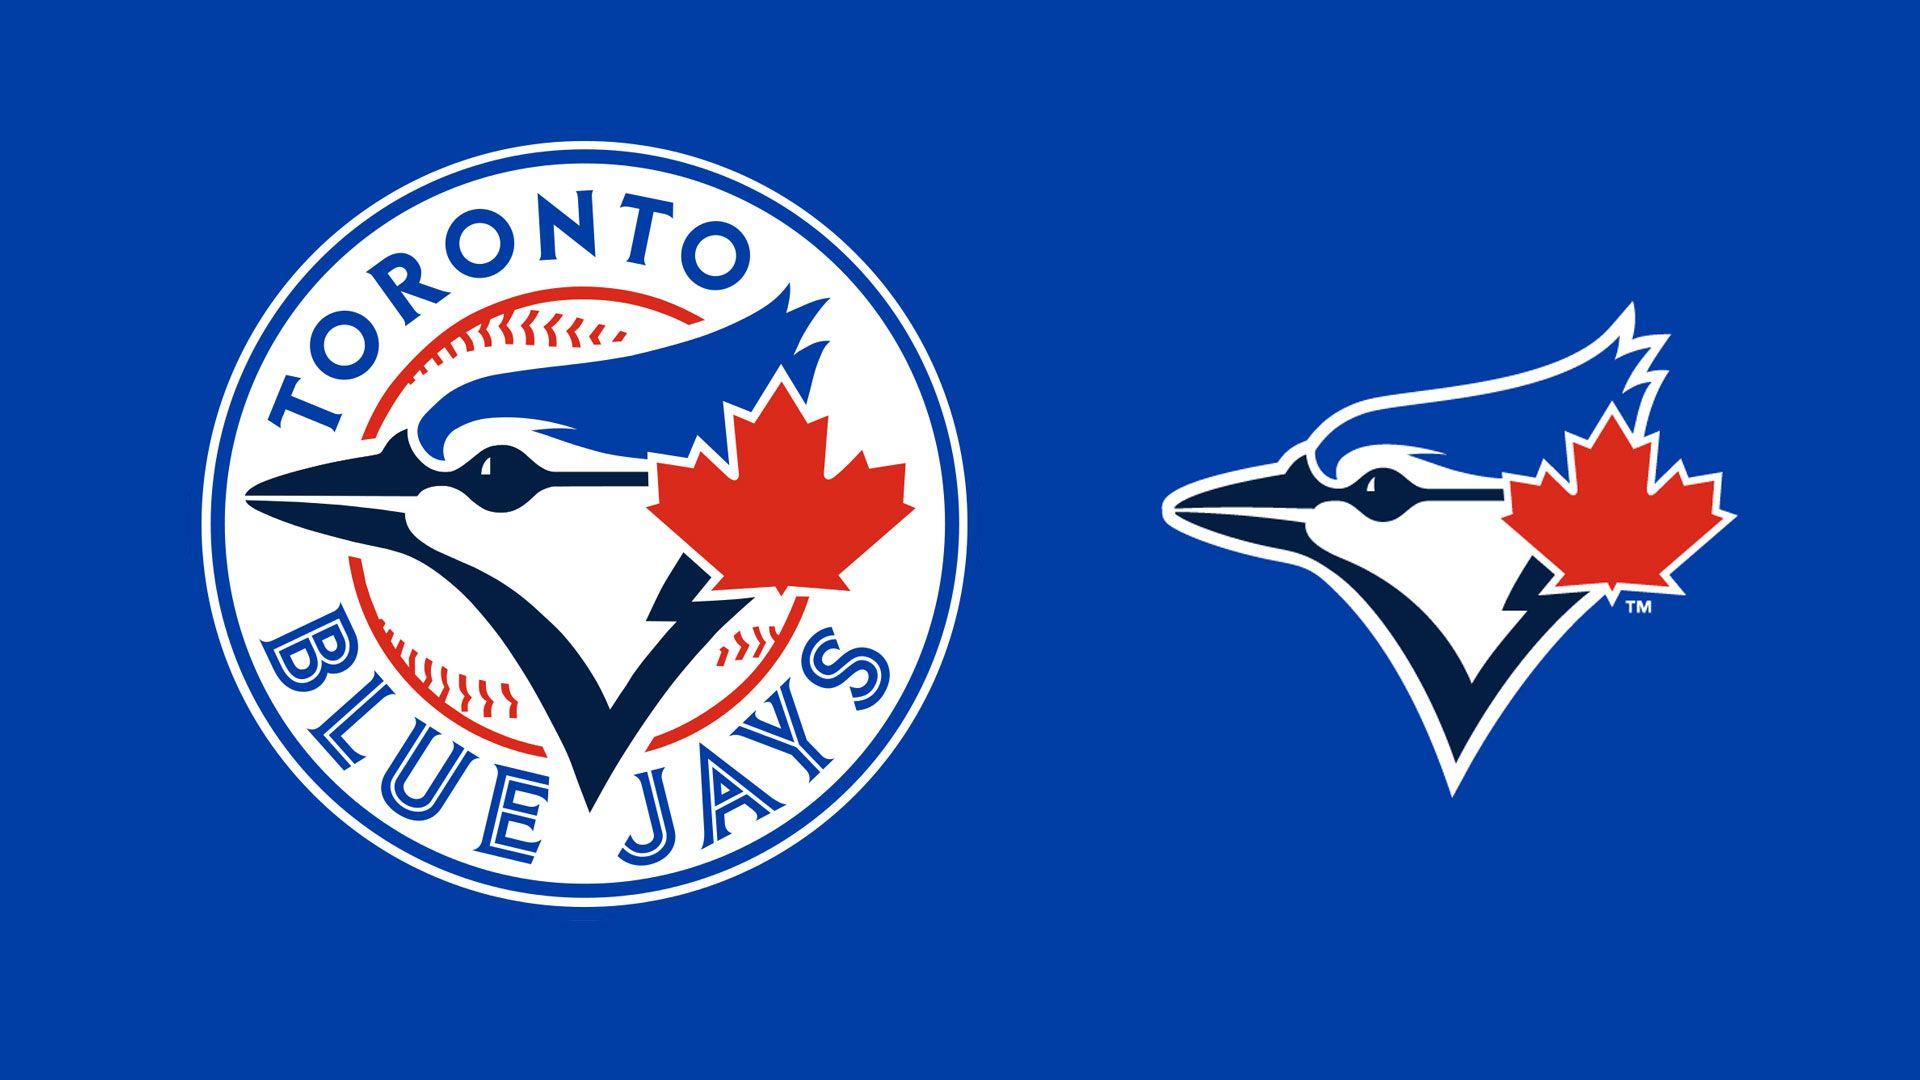 MLB Toronto Blue Jays Team Logo wallpaper HD 2016 in Baseball